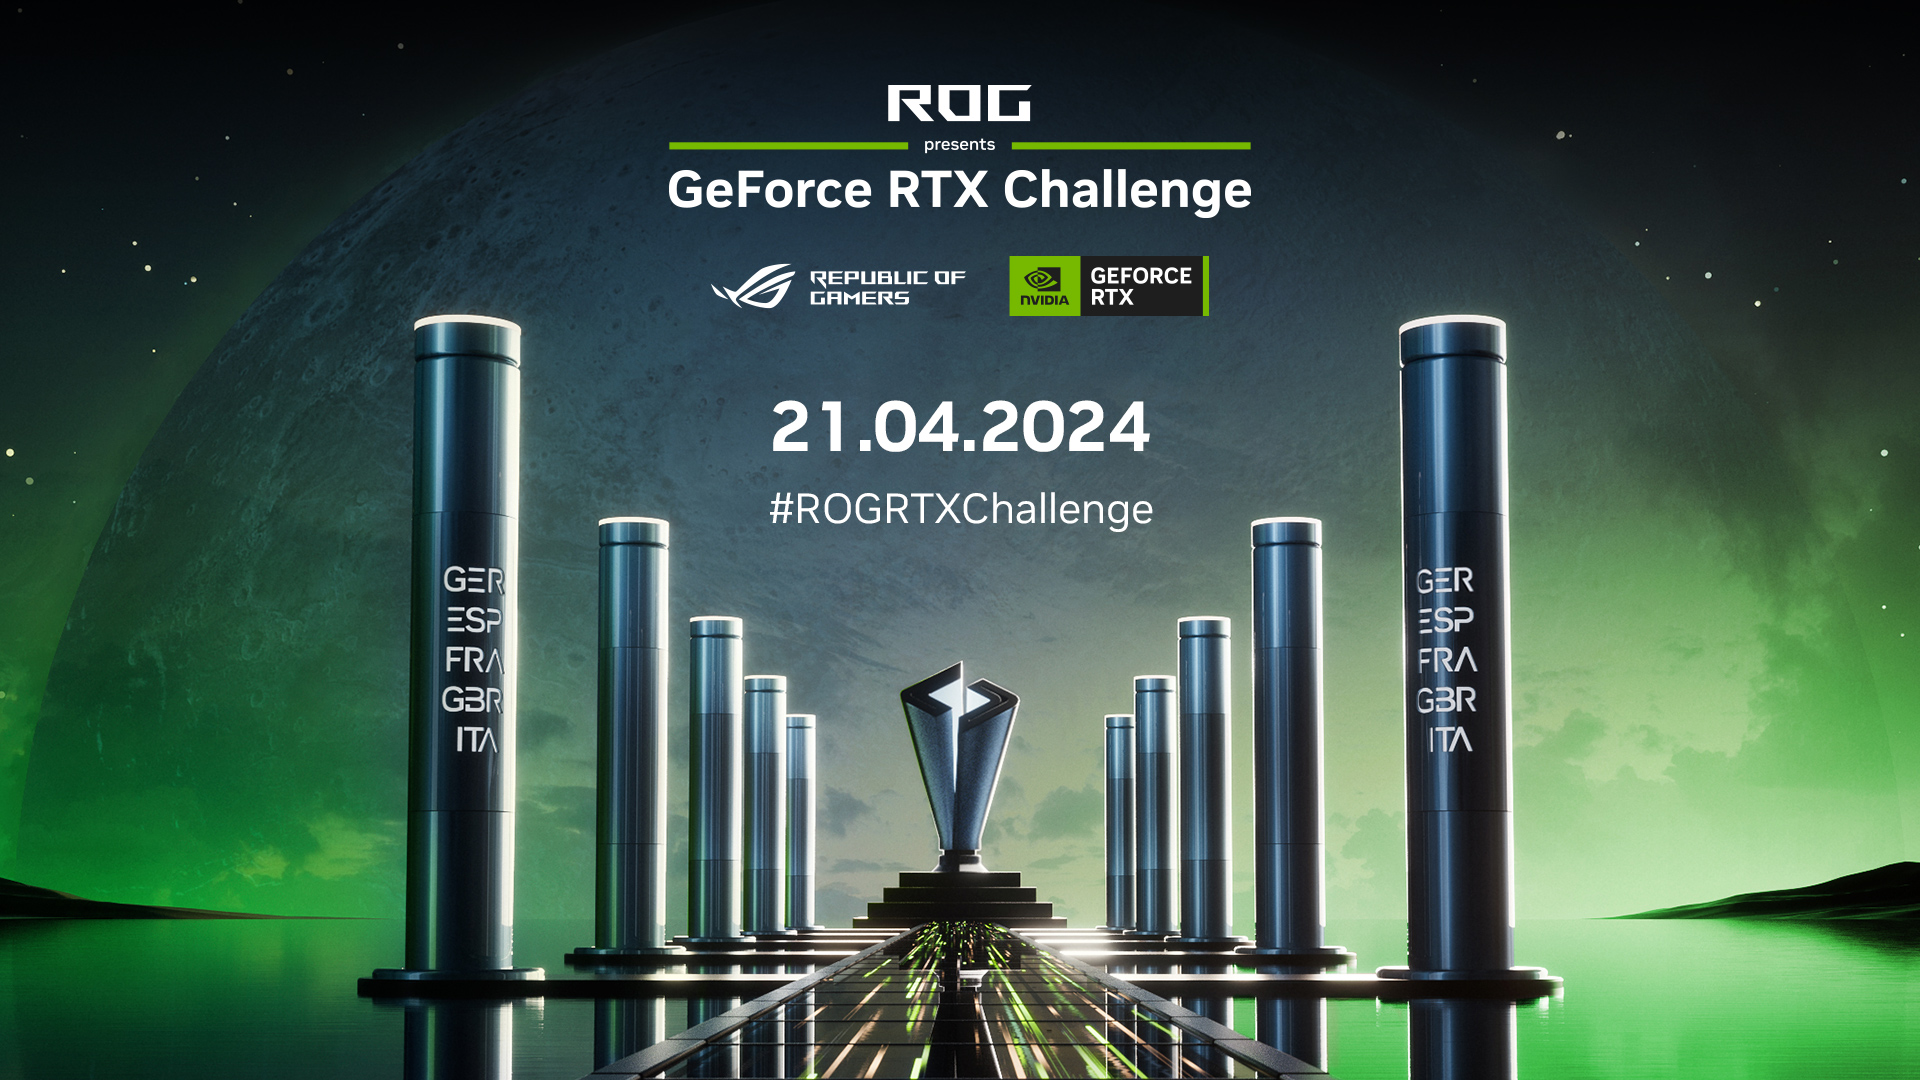 Unitevi alla GeForce RTX Challenge questo fine settimana!